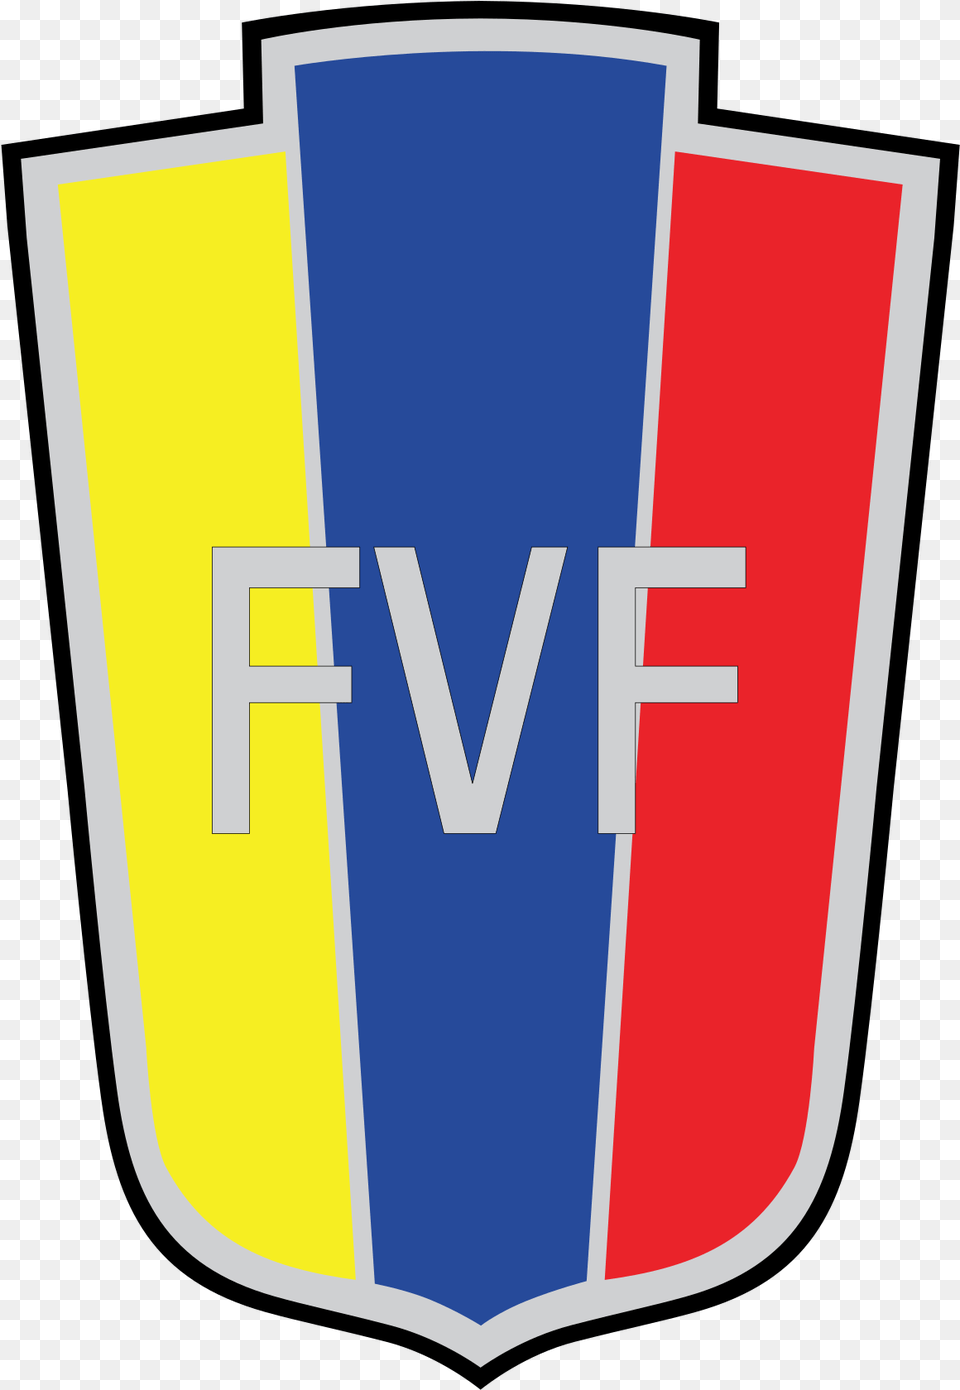 More Venezuela Soccer Images Venezuela Football Federation Logo, Armor, Shield Free Transparent Png